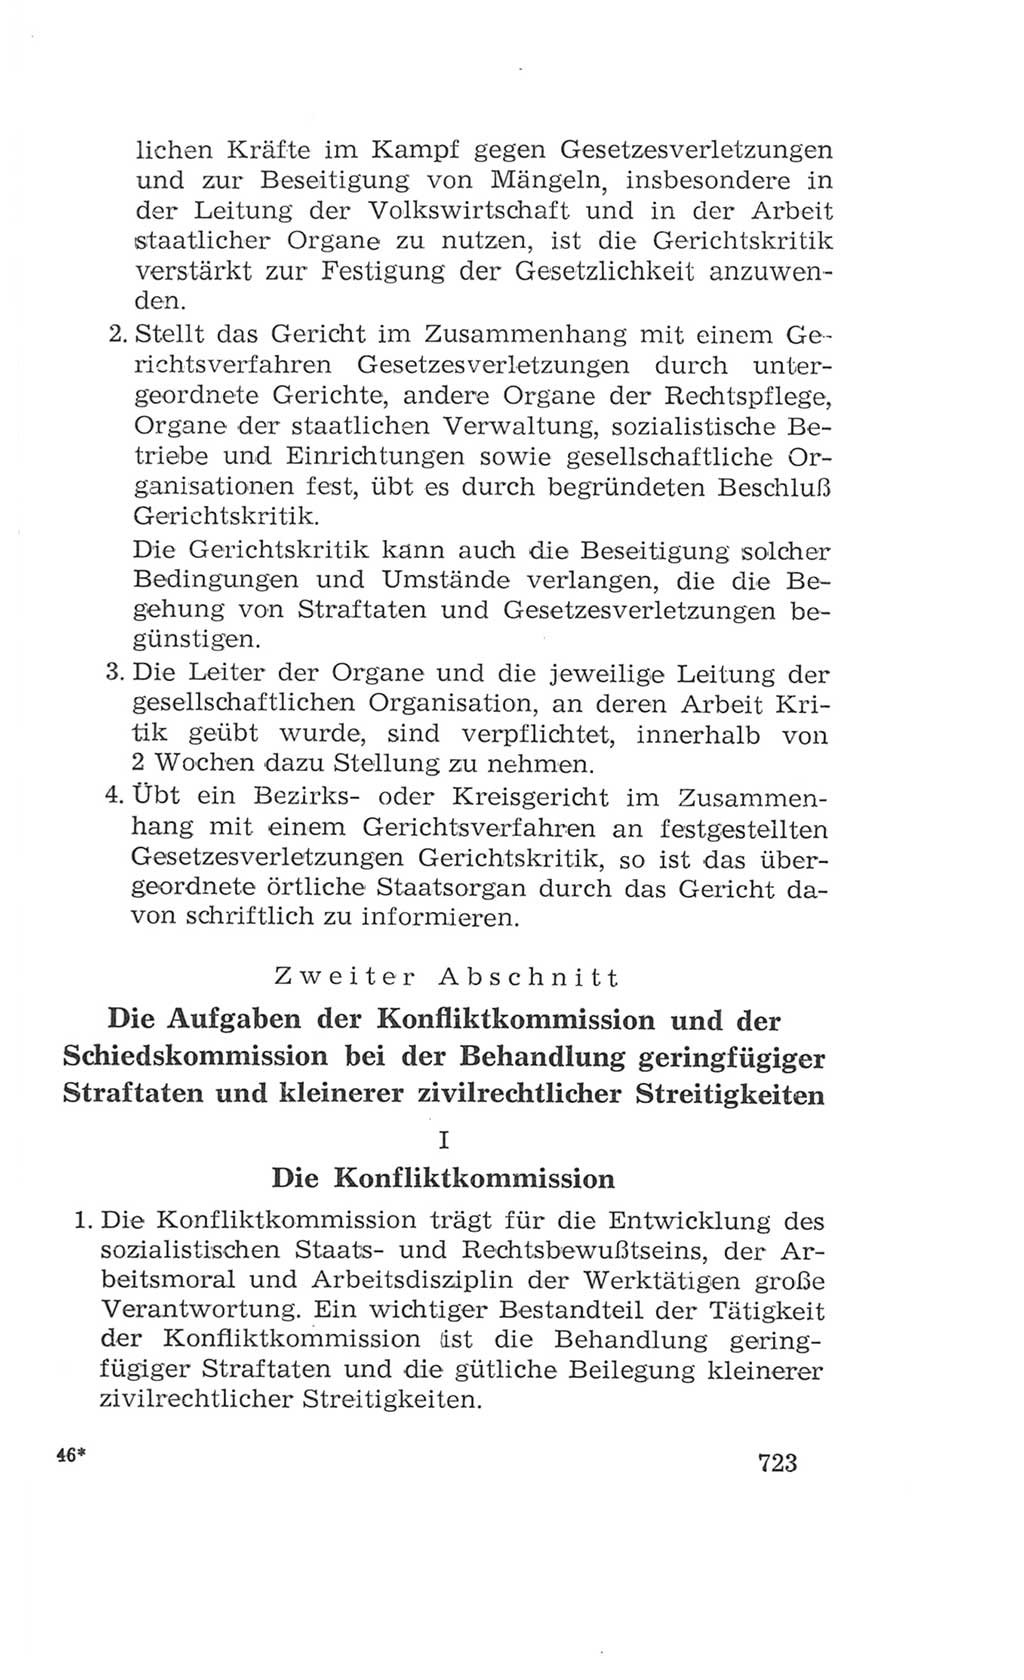 Volkskammer (VK) der Deutschen Demokratischen Republik (DDR), 4. Wahlperiode 1963-1967, Seite 723 (VK. DDR 4. WP. 1963-1967, S. 723)